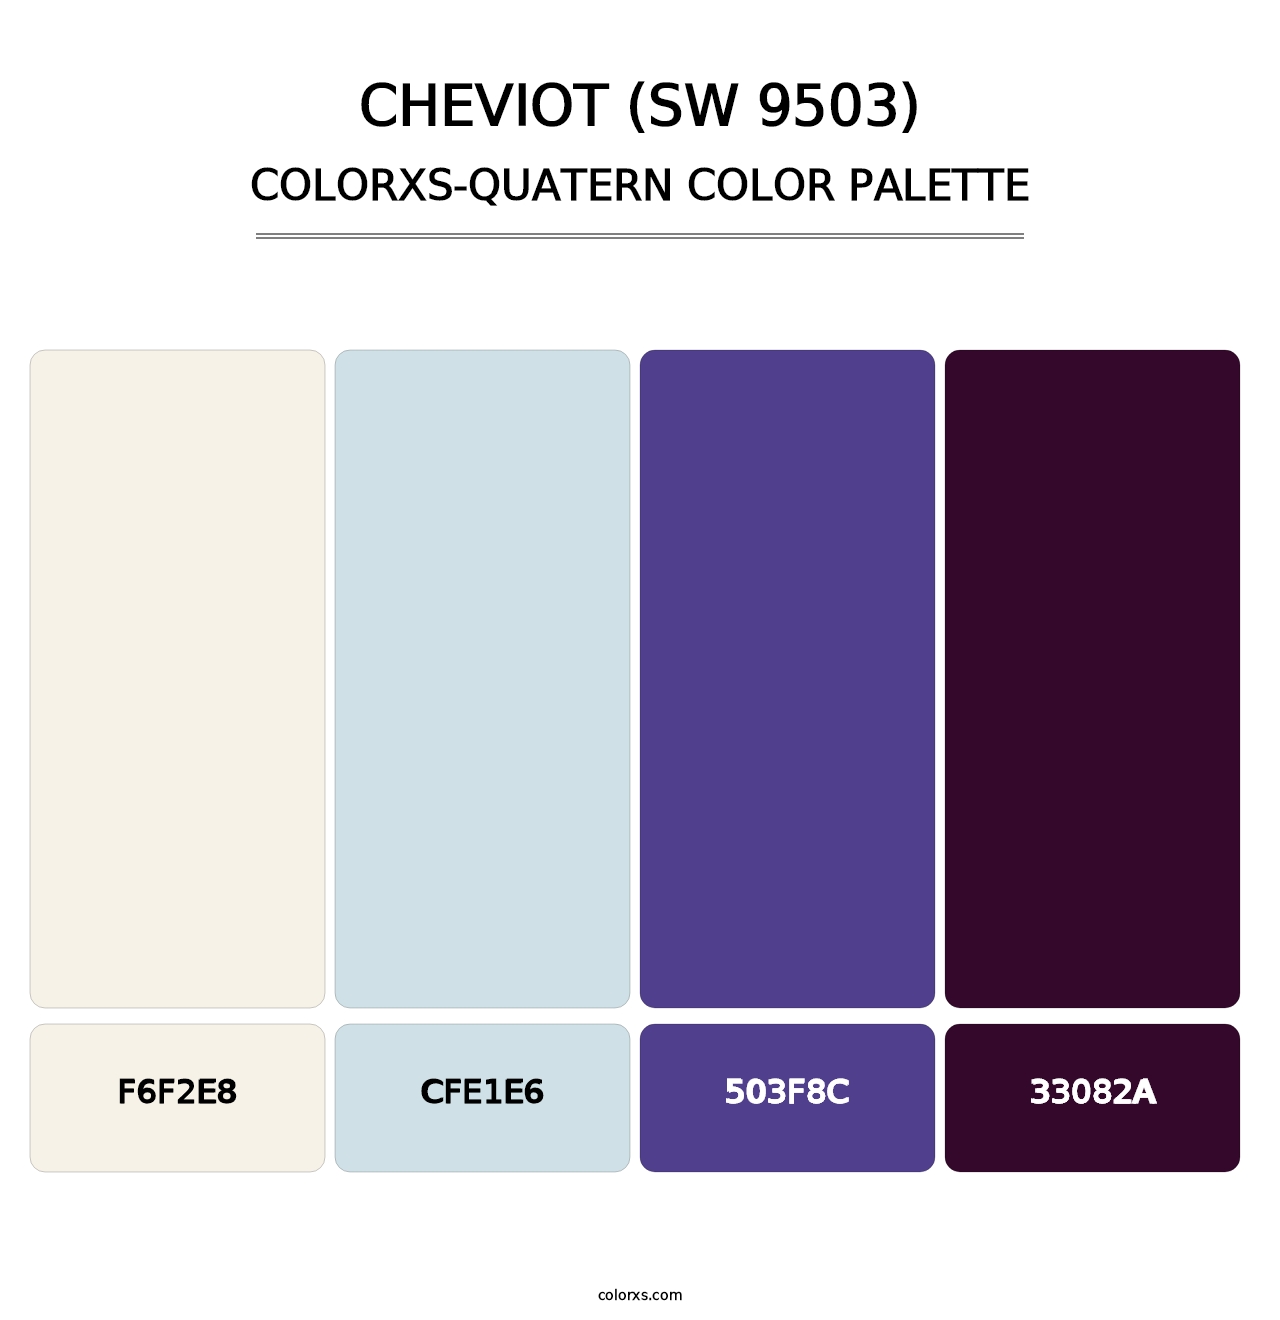 Cheviot (SW 9503) - Colorxs Quatern Palette